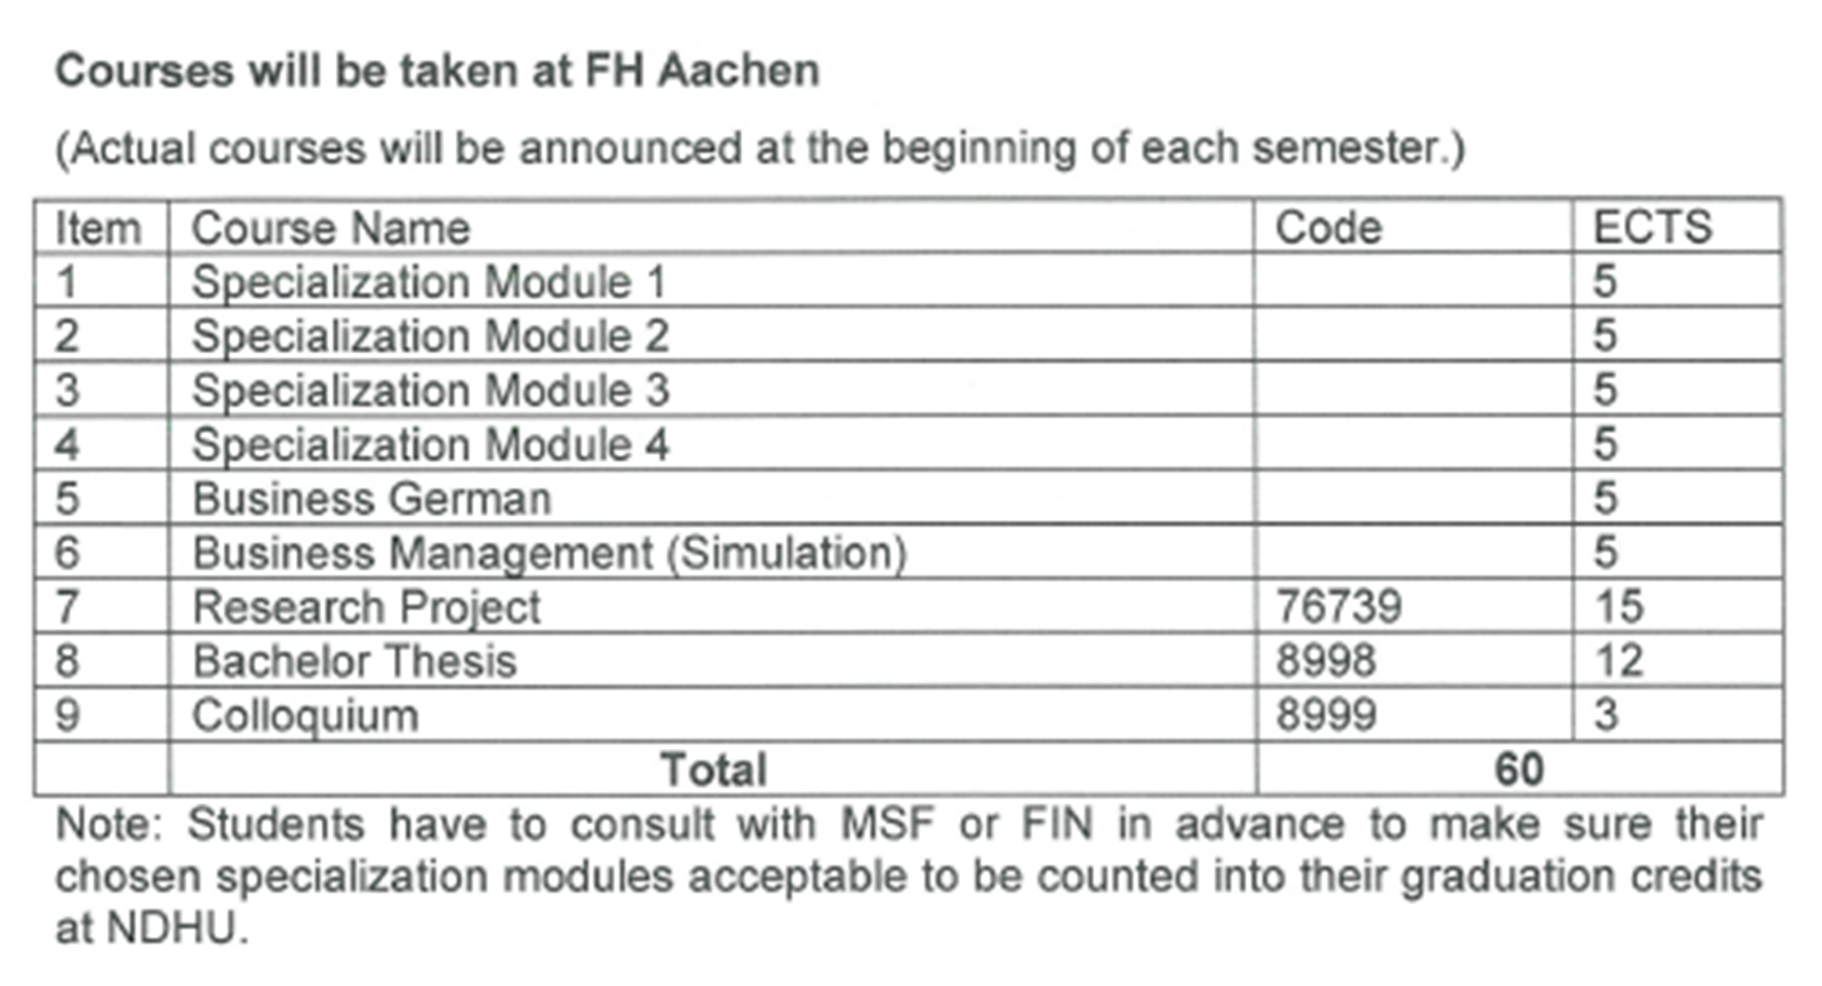 FH Aachen應修習課程